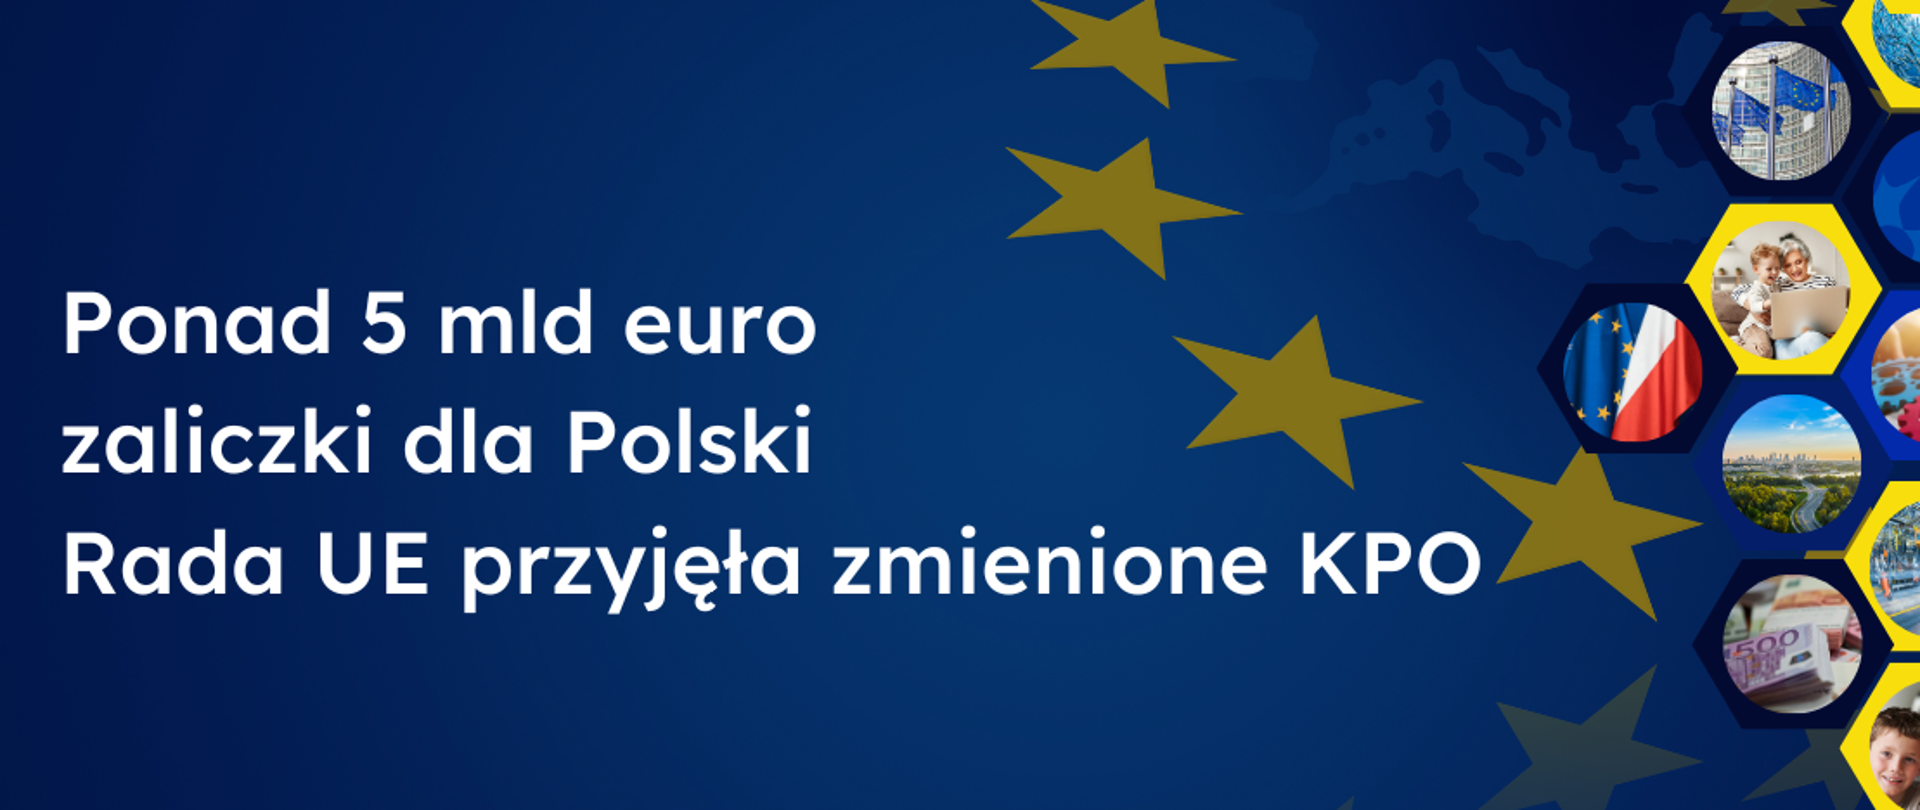 Rada UE przyjęła zmienione KPO, napis informujący o przyjęciu zmienionego KPO na granatowym tle, po prawej gwiazdki UE o kolaż ze zdjęć